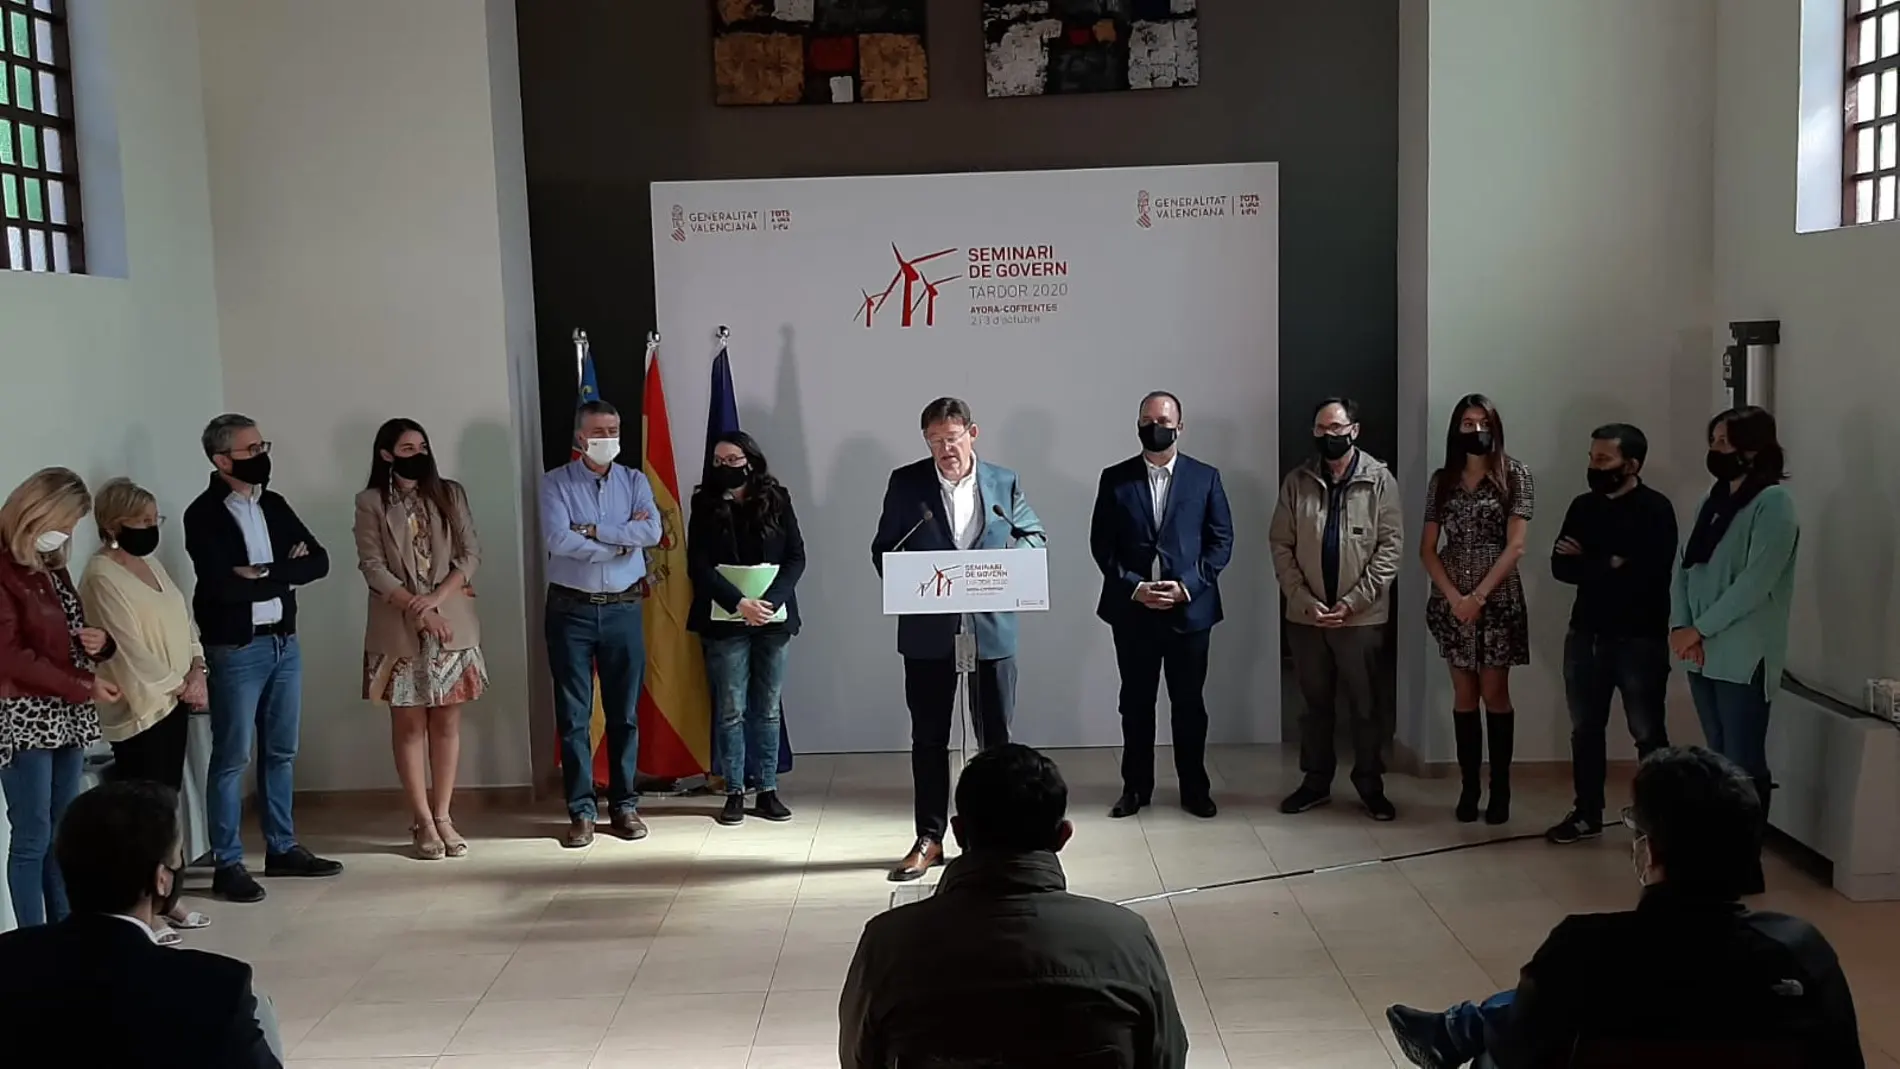 El presidente valenciano, Ximo Puig, junto a todo el Consell durante el "Seminari de Govern Tardor 2020", celebrado este fin de semana en Ayora y Cofrentes